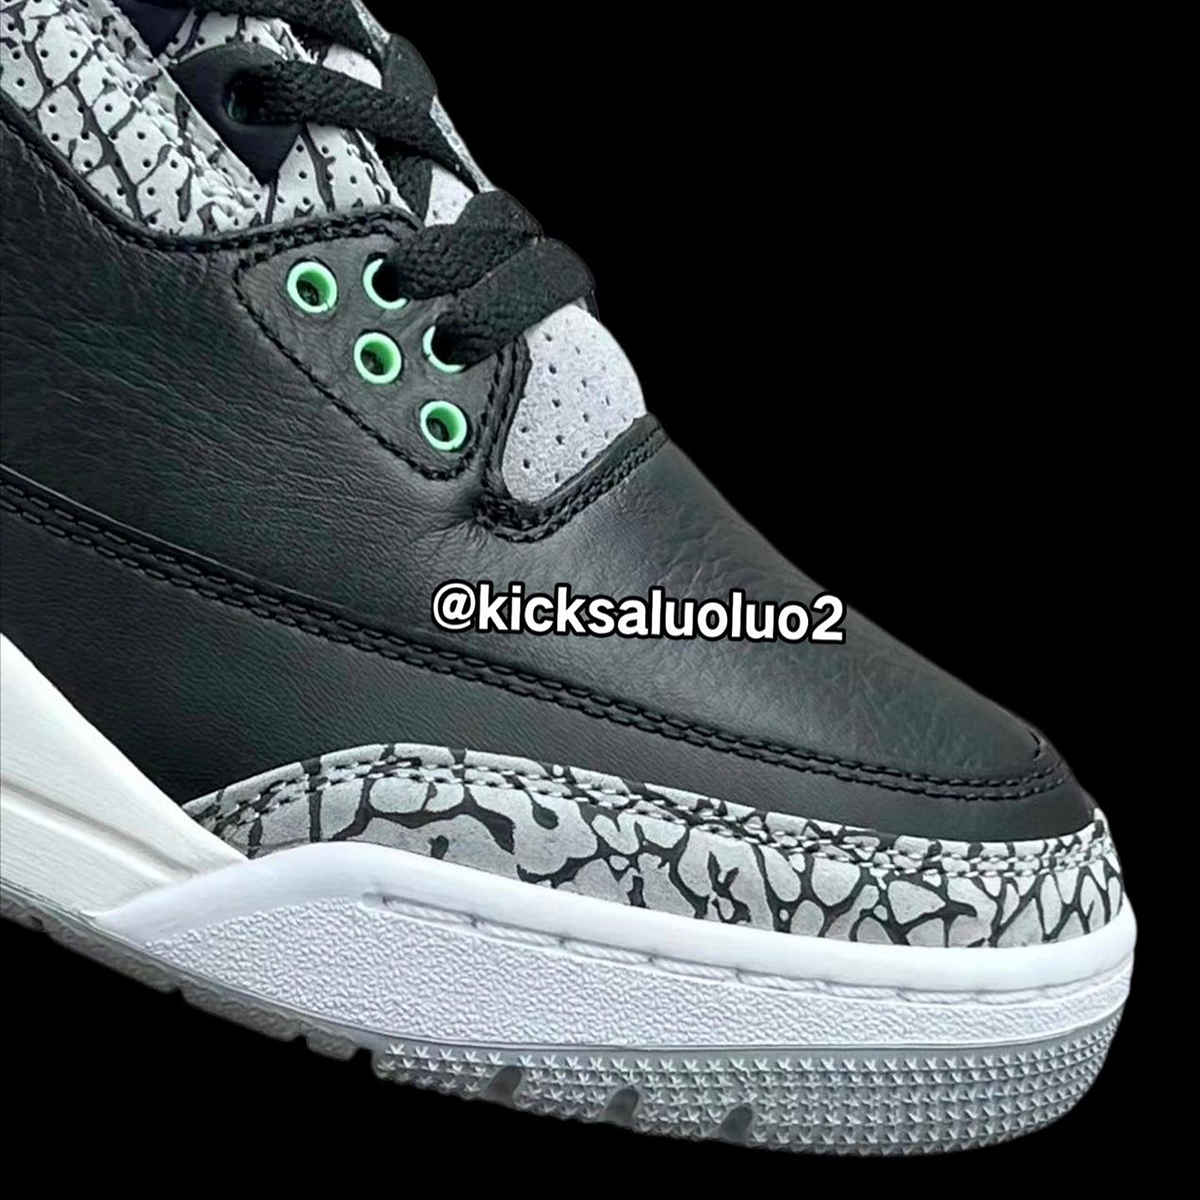 Air Jordan 3 Retro OG "Black Cement" 2018 Green Glow Ct8532 031 4